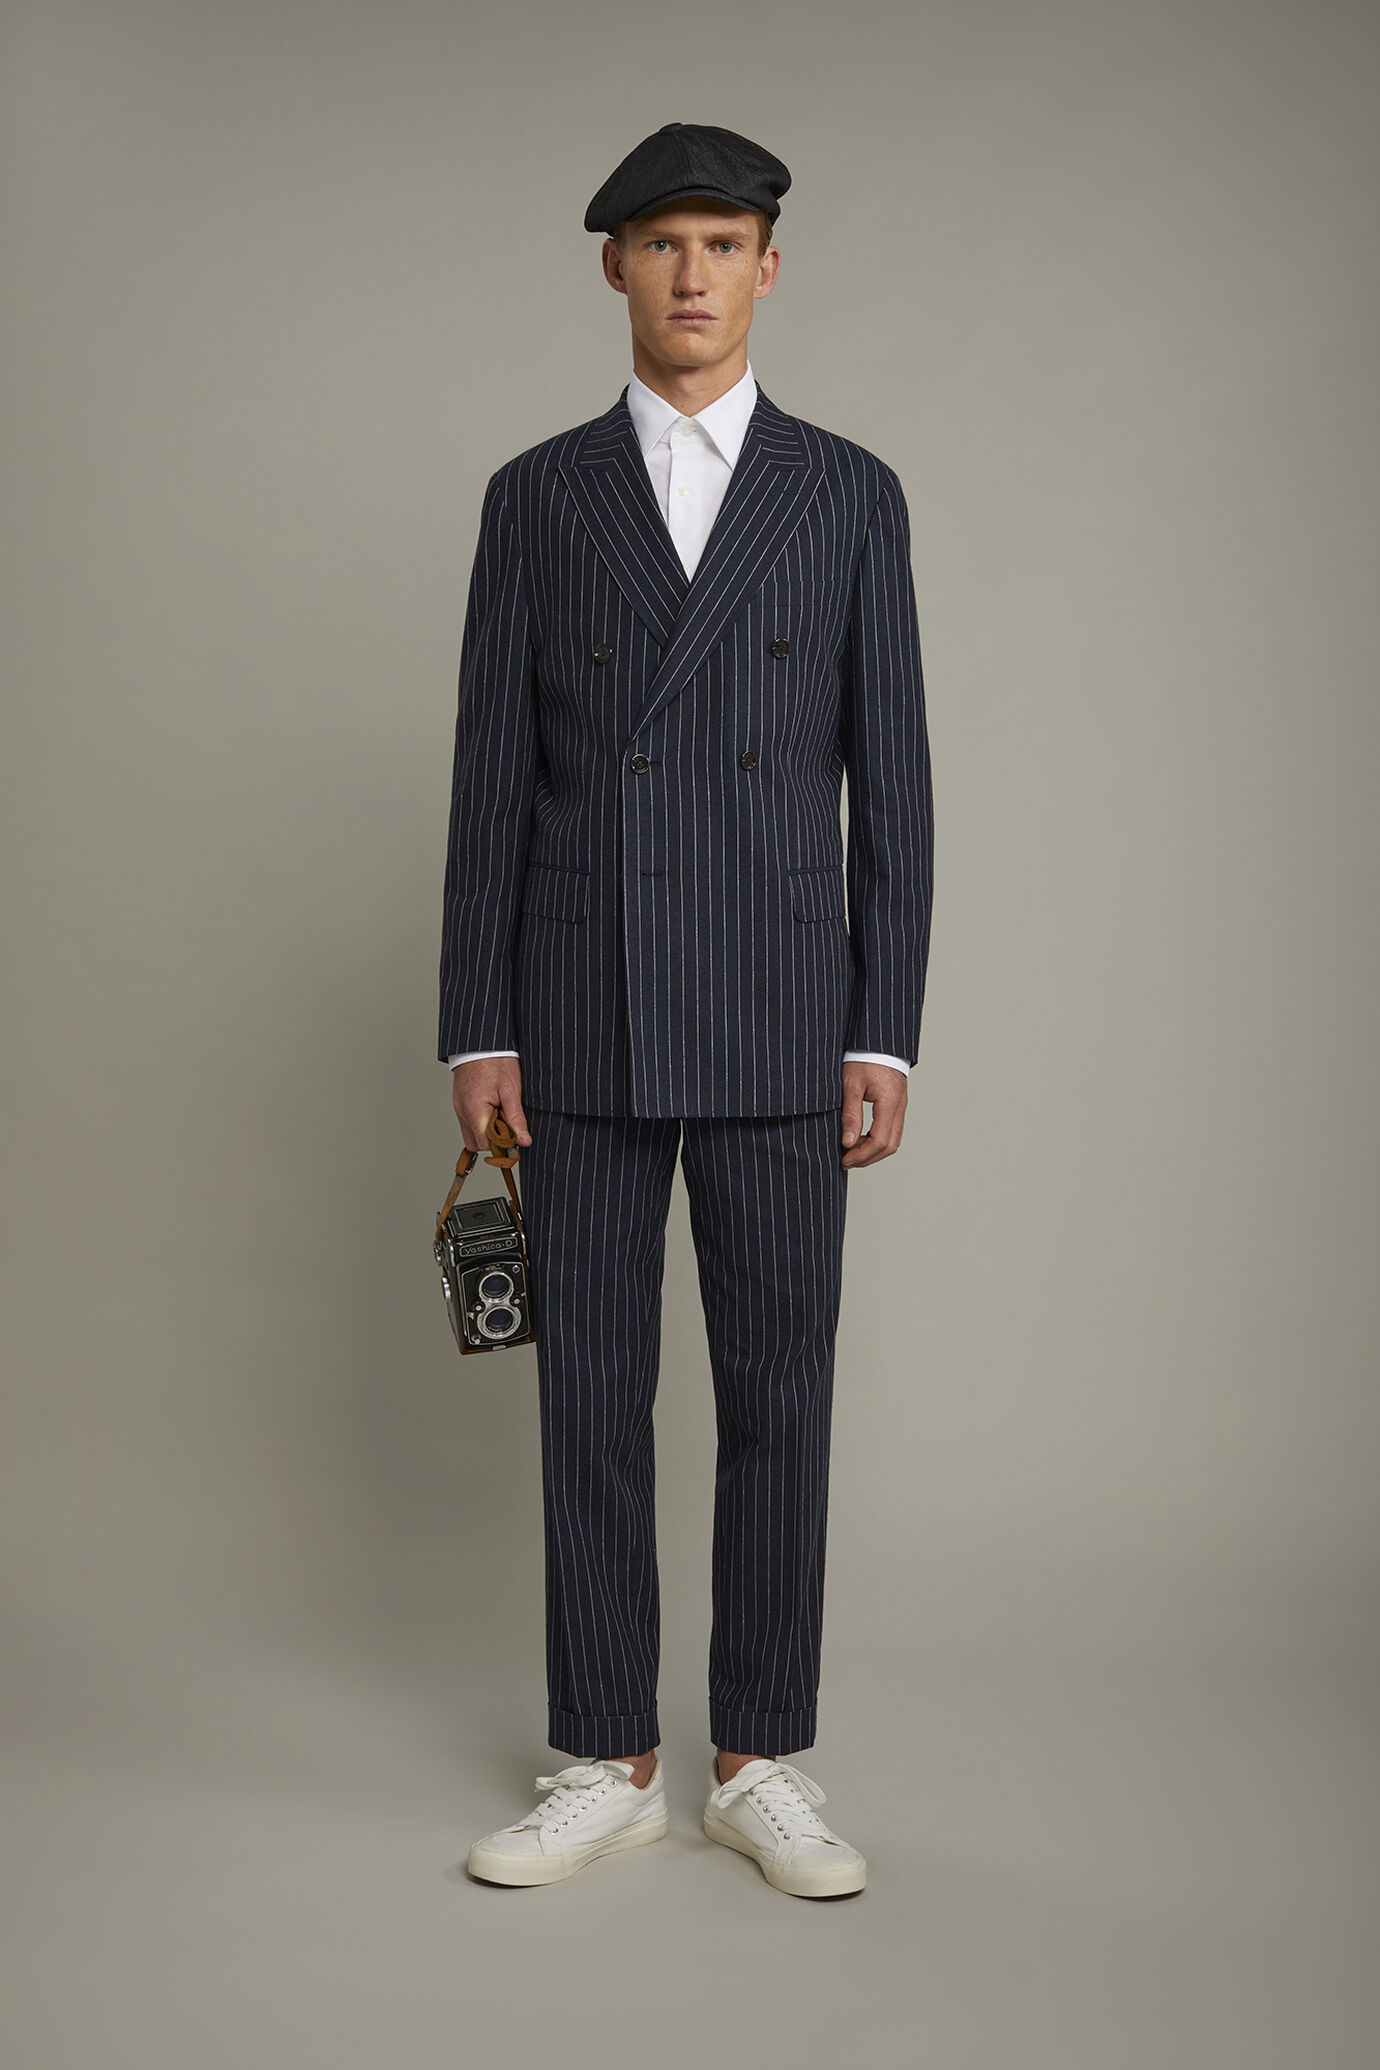 Veste croisée homme non doublée avec col en pointe et poches à rabat, en tissu lin et coton, motif à fines rayures coupe régulière